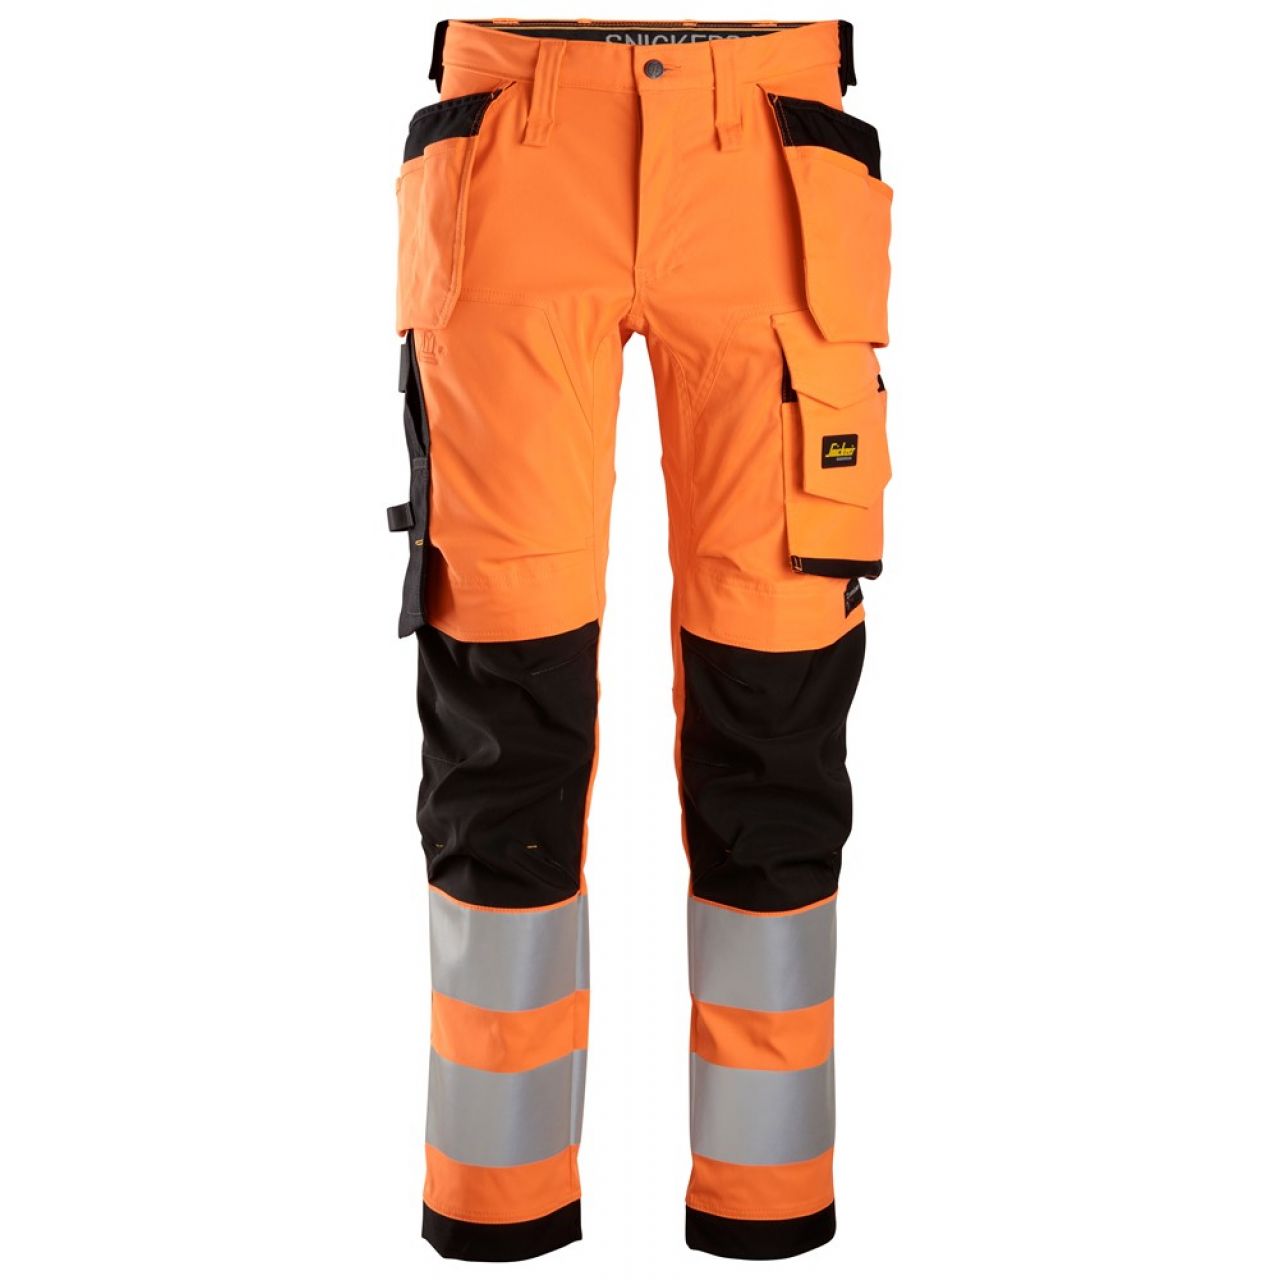 6243 Pantalones largos de trabajo elásticos de alta visibilidad clase 2 con bolsillos flotantes naranja-negro talla 258